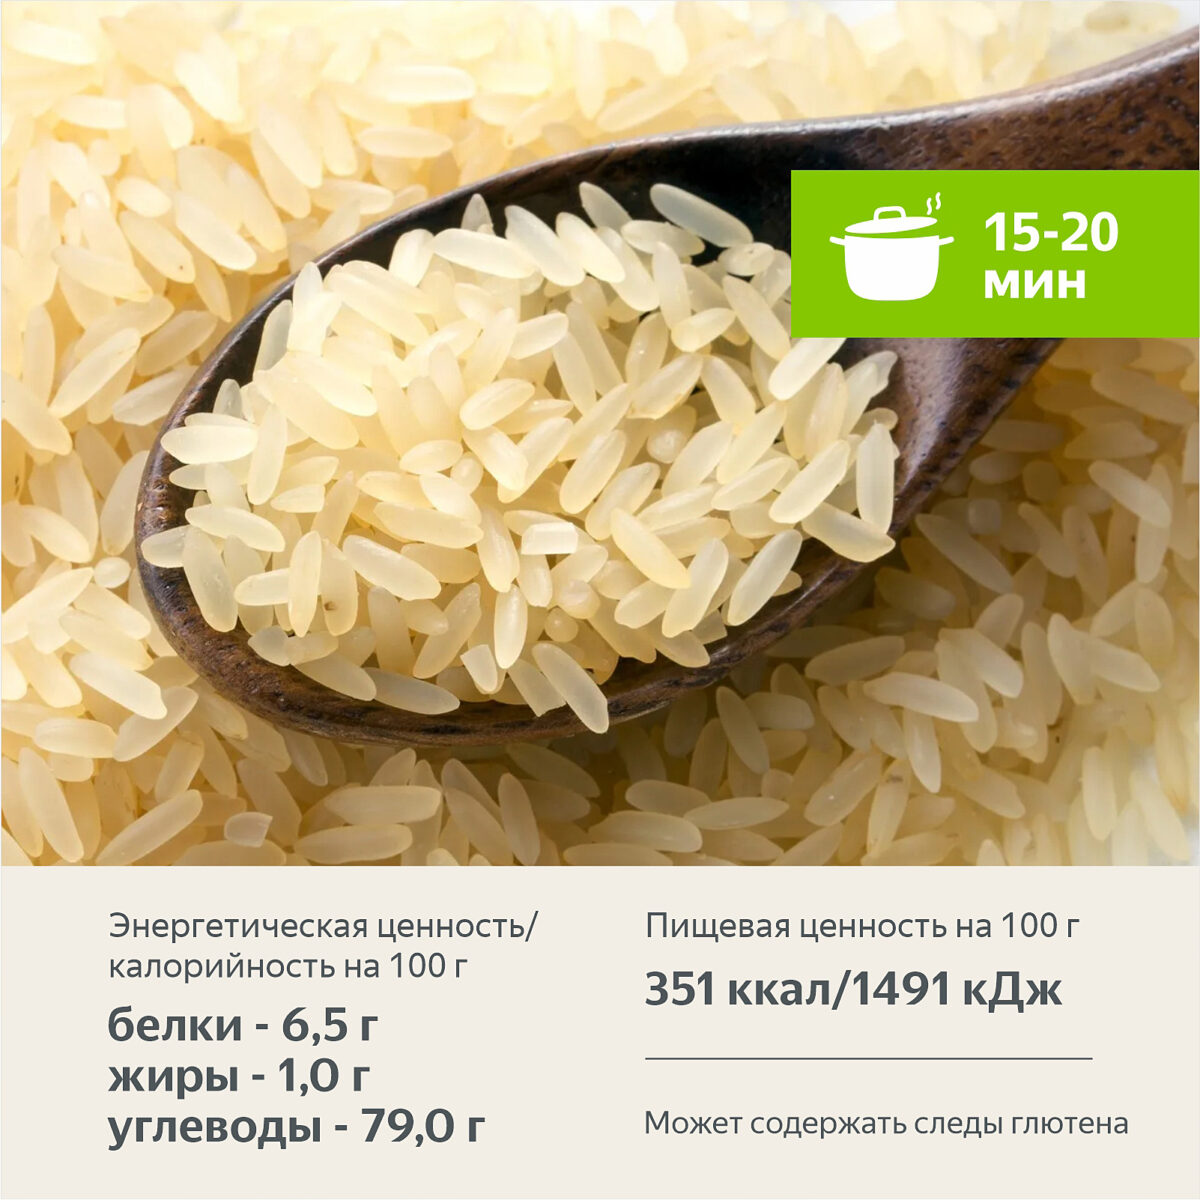 Рис пропаренный Рассыпчатый 800 гр. Алтайские крупы - Интернет-магазин